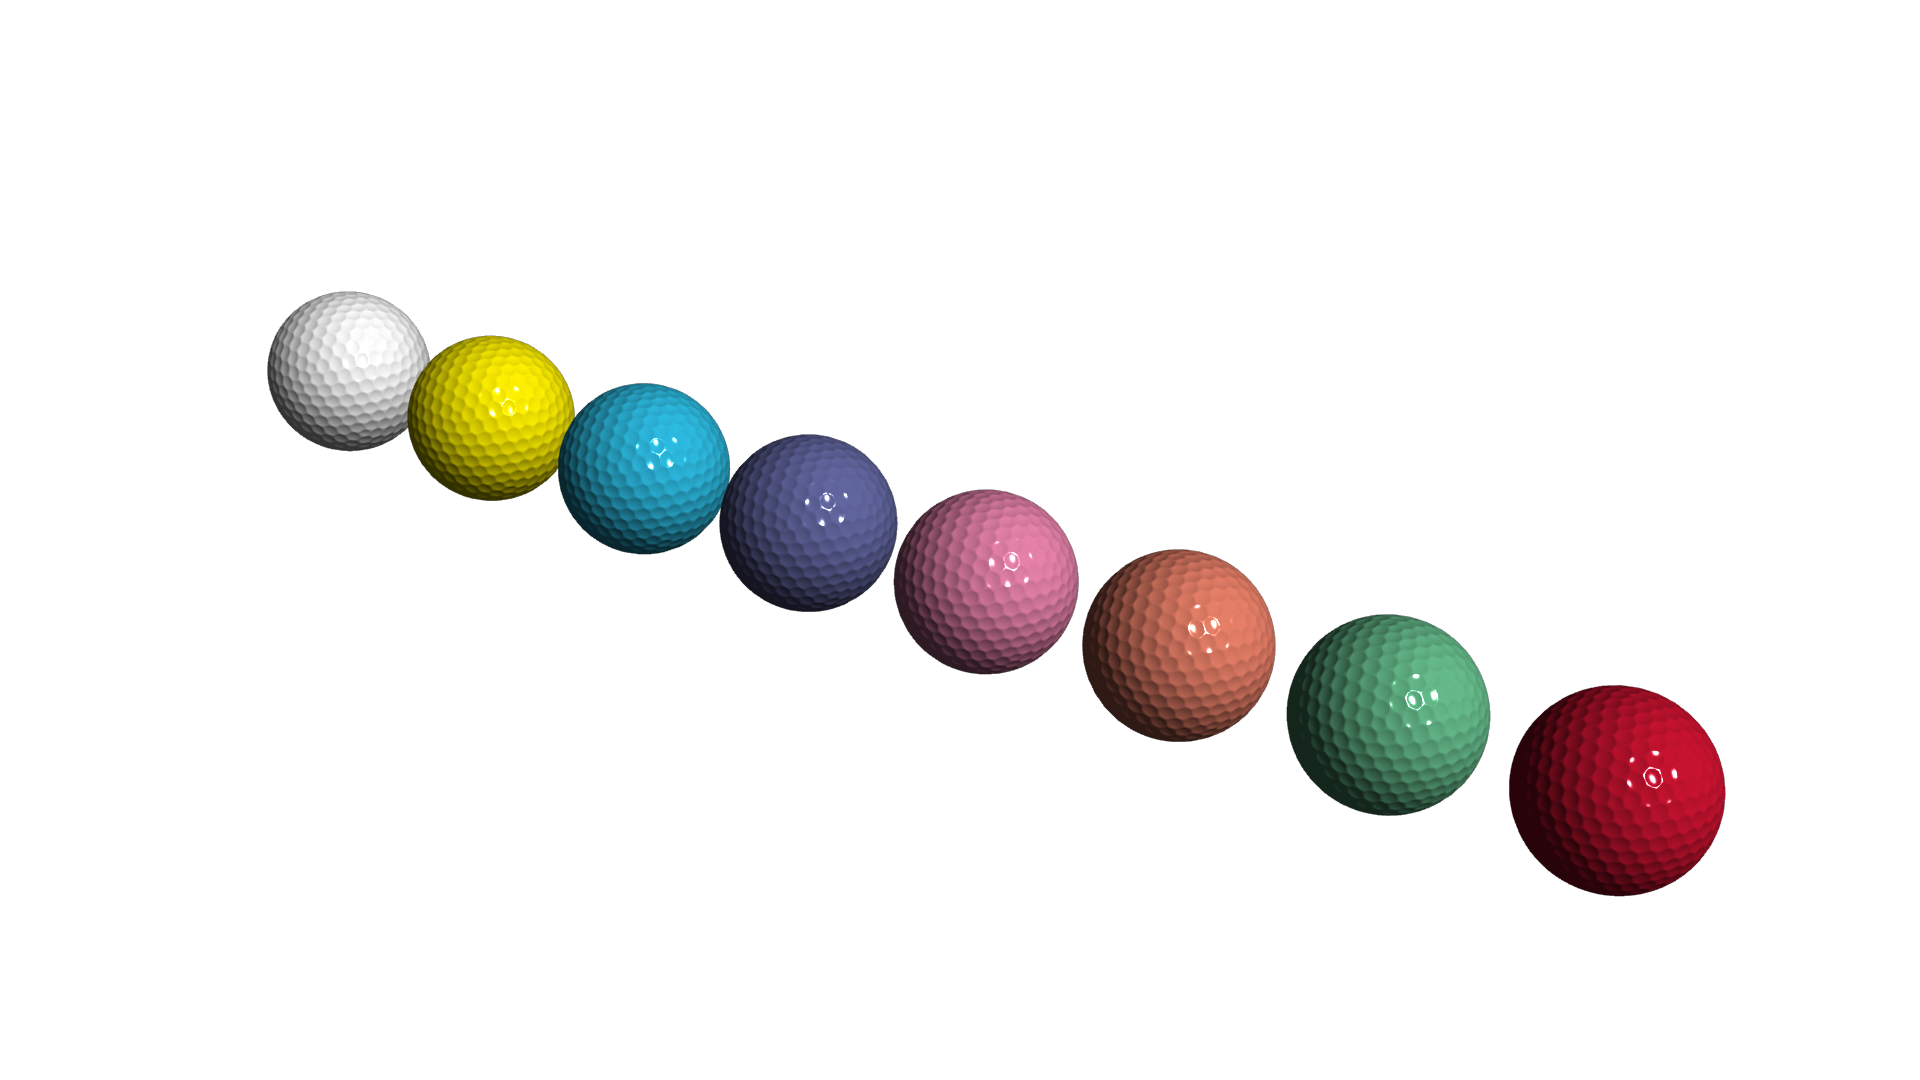 3dモデリング素材フリーダウンロード カラーゴルフボール6個 動画 3dcg映像 3dデータ素材を無料フリーダウンロード Malisen Lab